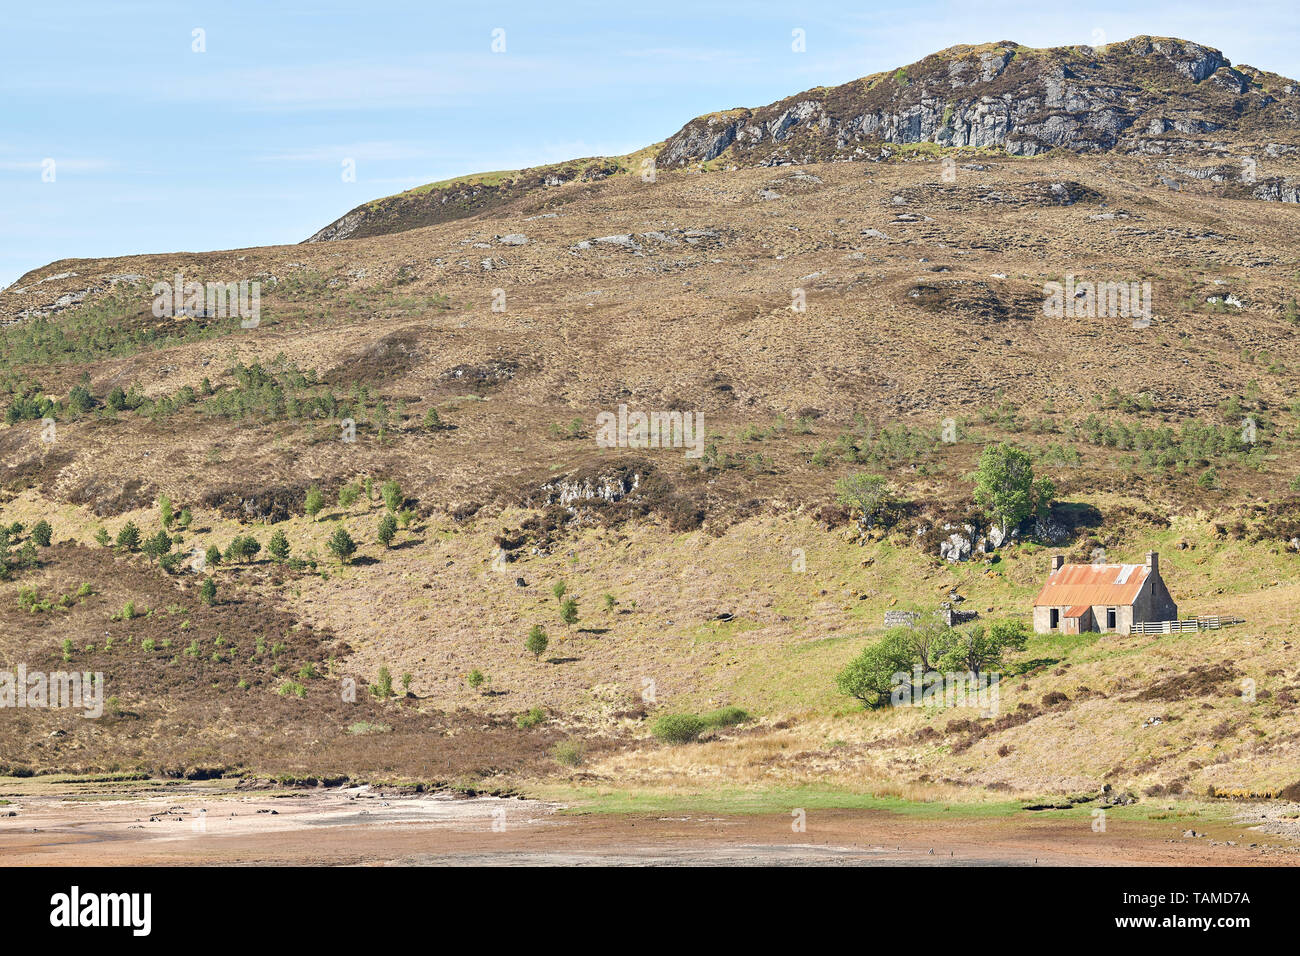 Abbandonato casa croft sul litorale a loch male un Sgalaig loch, Wester Ross, Highlands della Scozia. Foto Stock